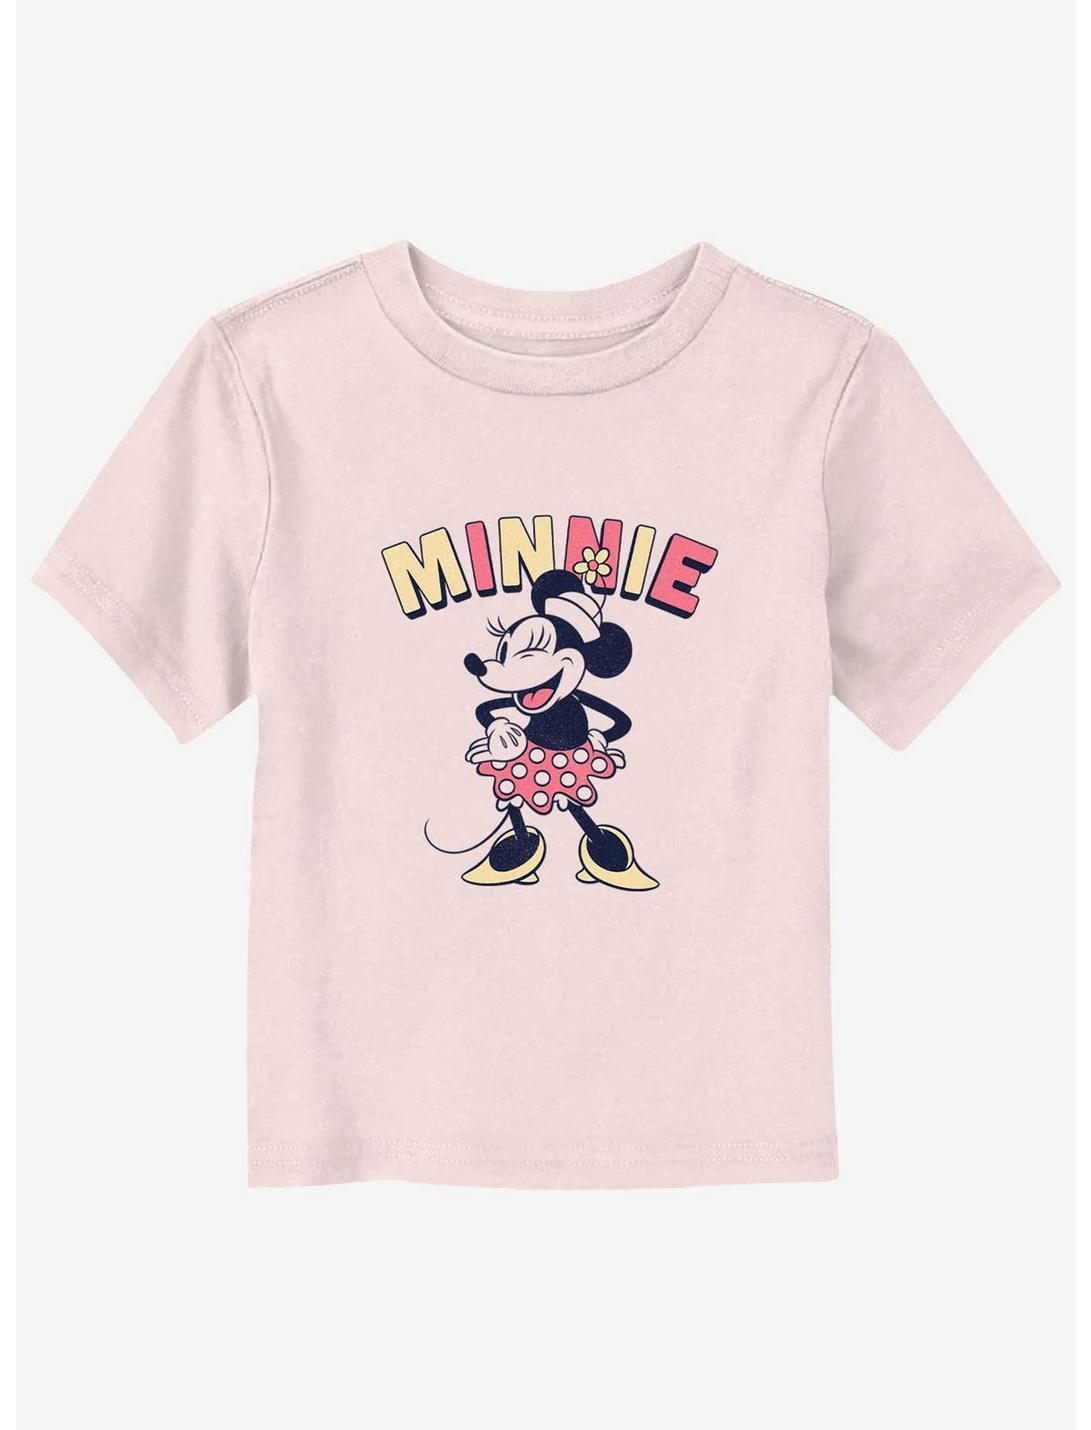 Disney Minnie Mouse Sass- Toddler T-Shirt, LIGHT PINK, hi-res